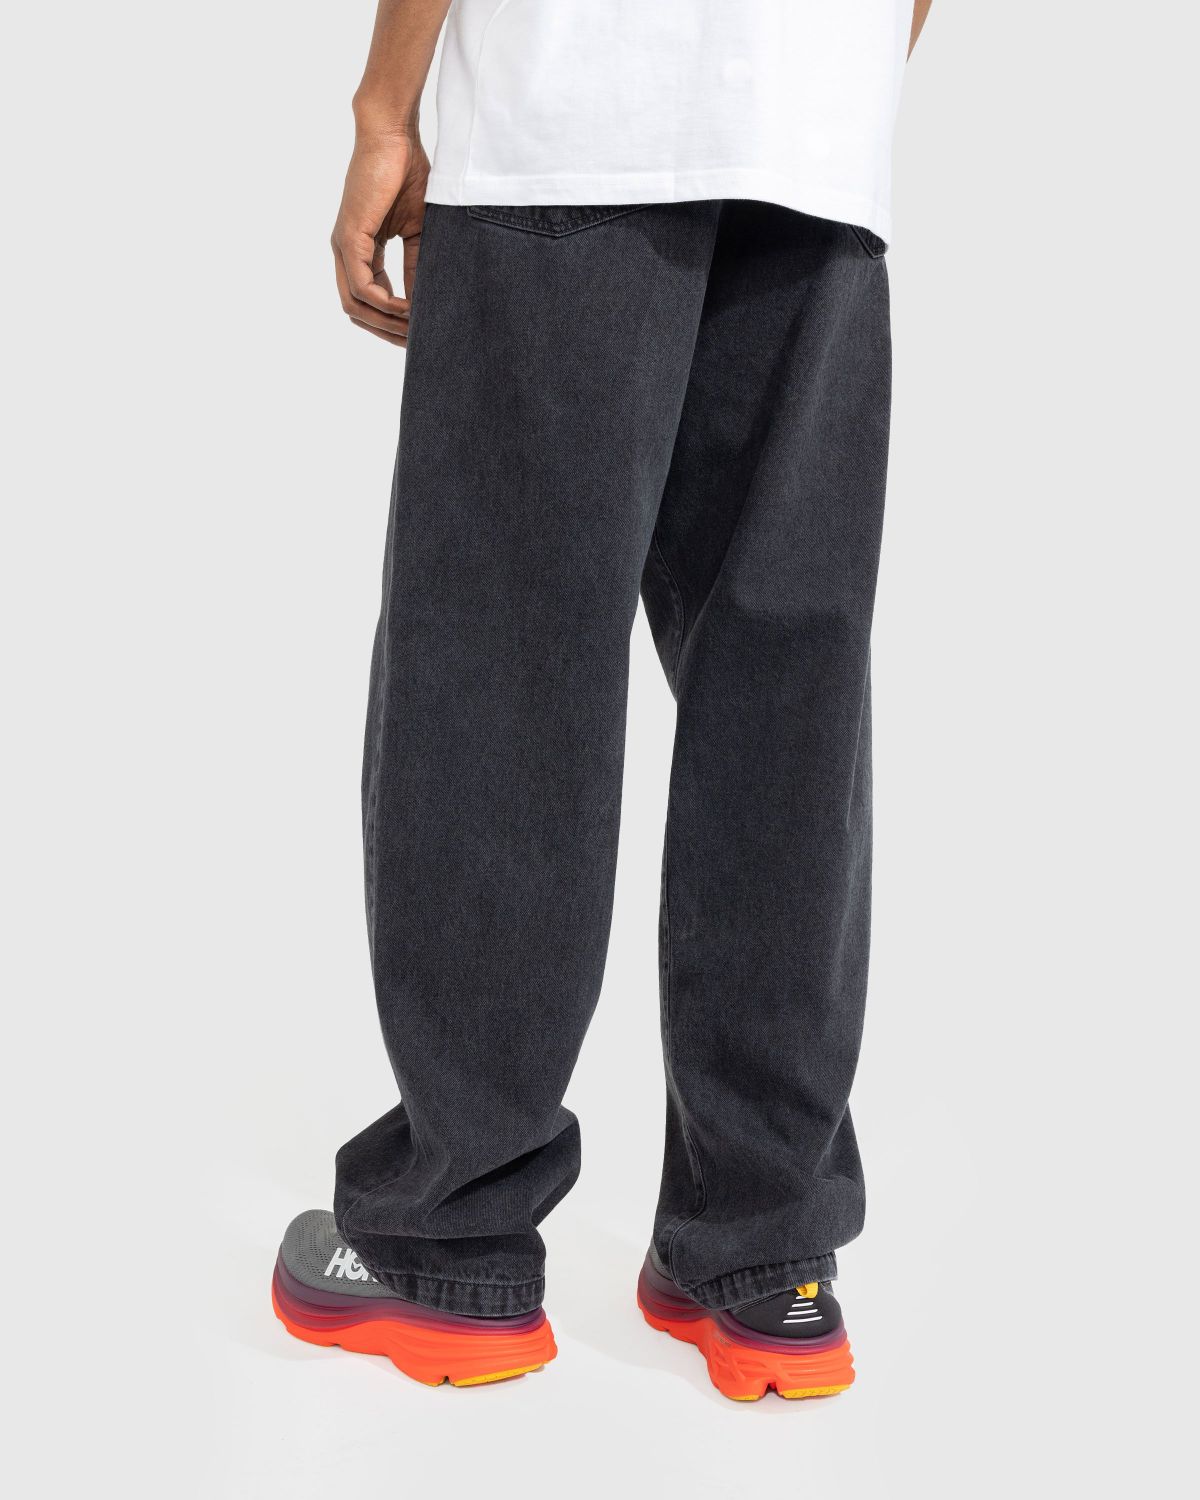 Carhartt WIP Landon Pant - Black Stone Washed, Hosen, Men, Streetwear